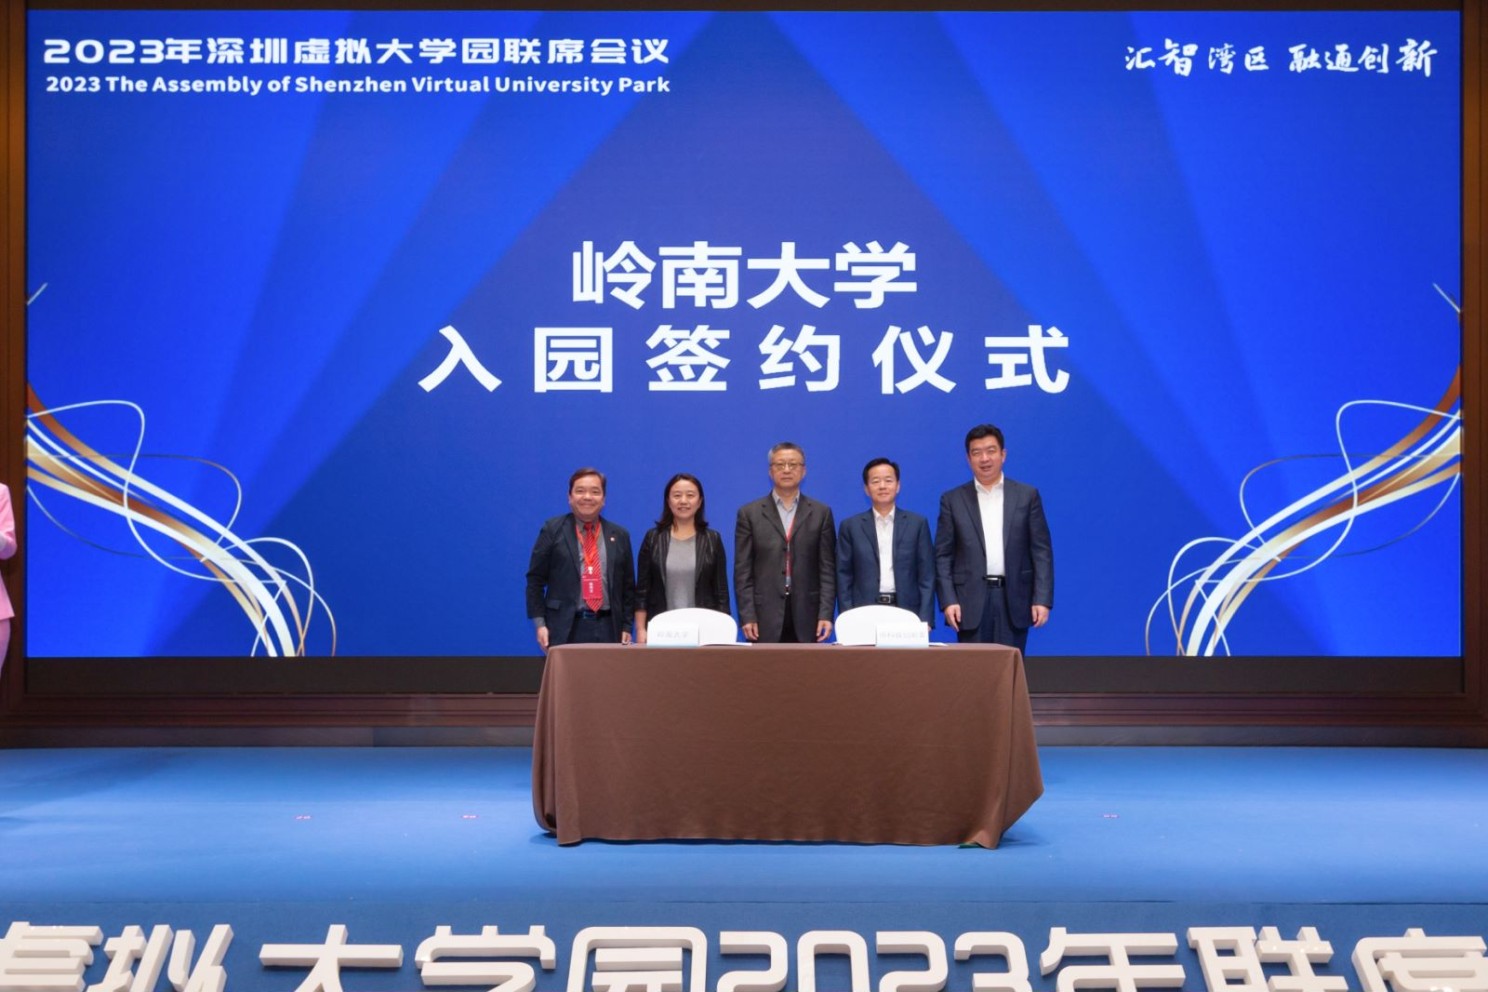 岭大与深圳市科技创新委员会签定深圳虚拟大学园入驻协议。